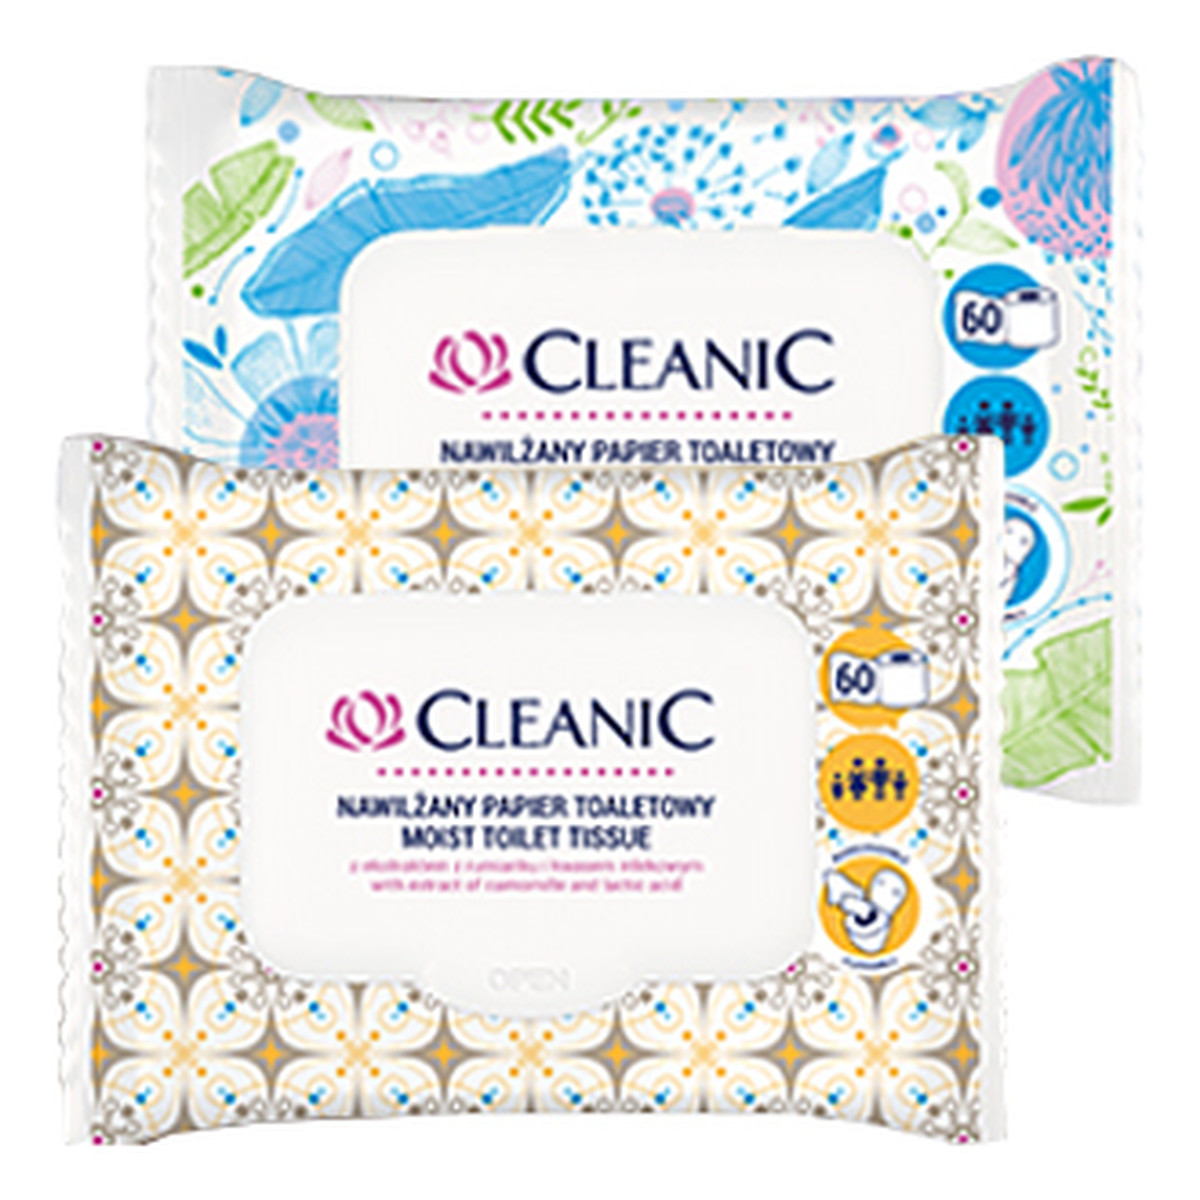 Cleanic Intimate nawilżany papier toaletowy 60szt